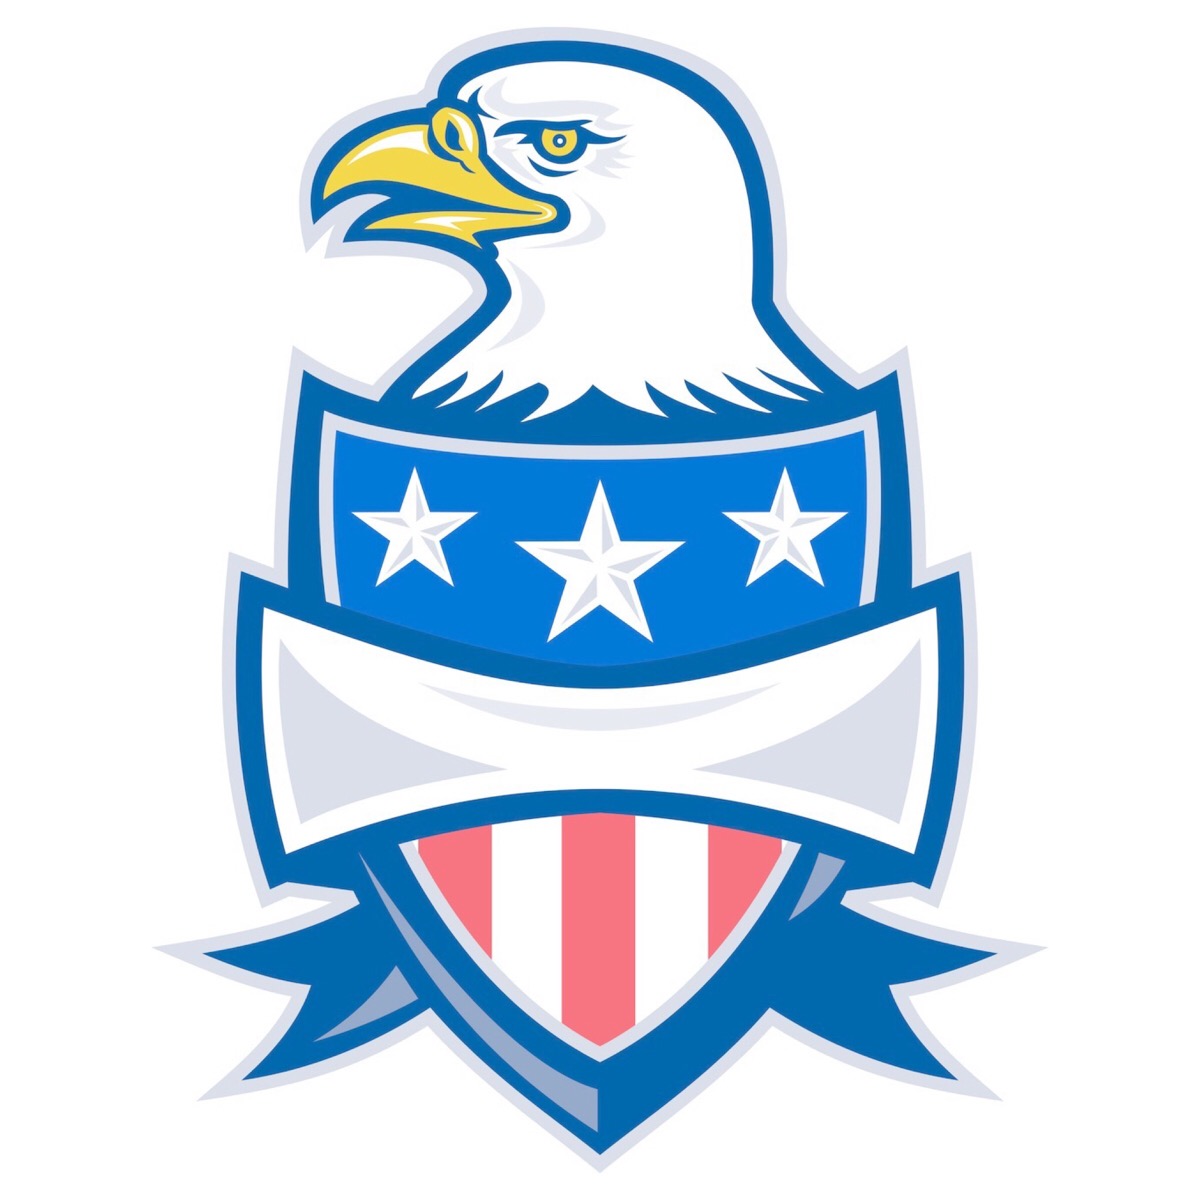 白头鹰logo图片